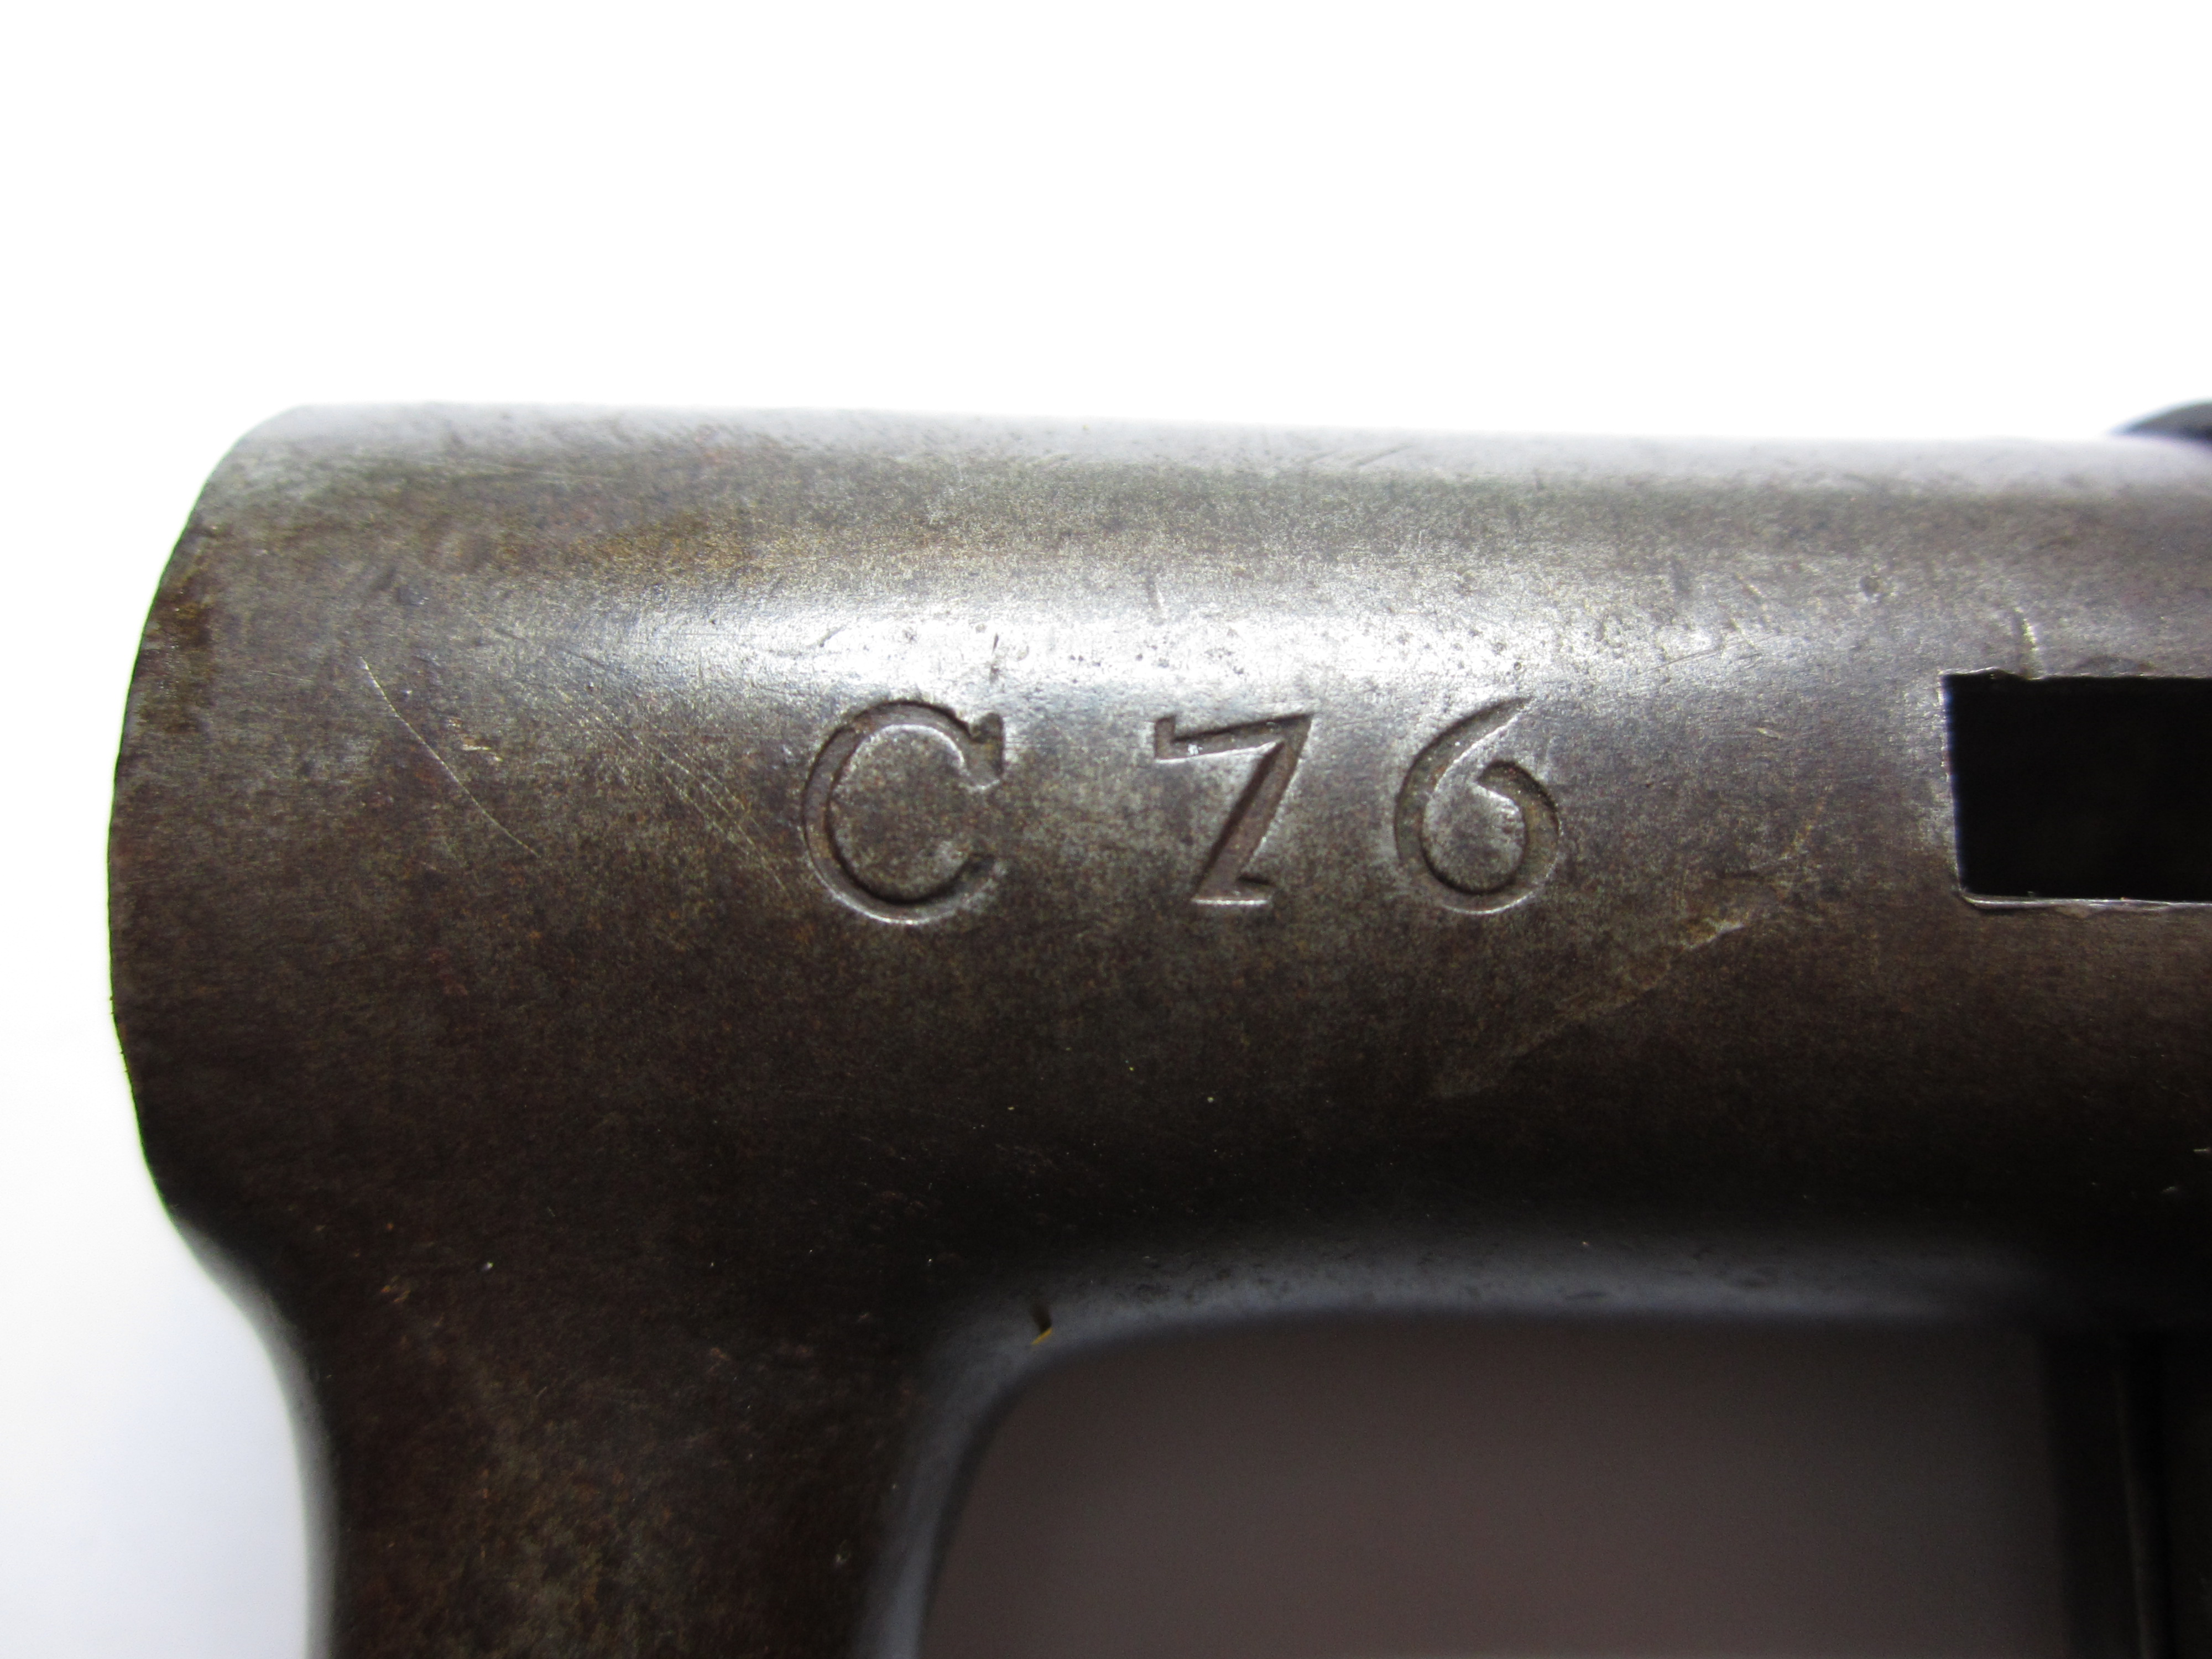 ./guns/blankvaapen/bilder/Blank-Herzberg-Dolle-M1846-440-3.JPG